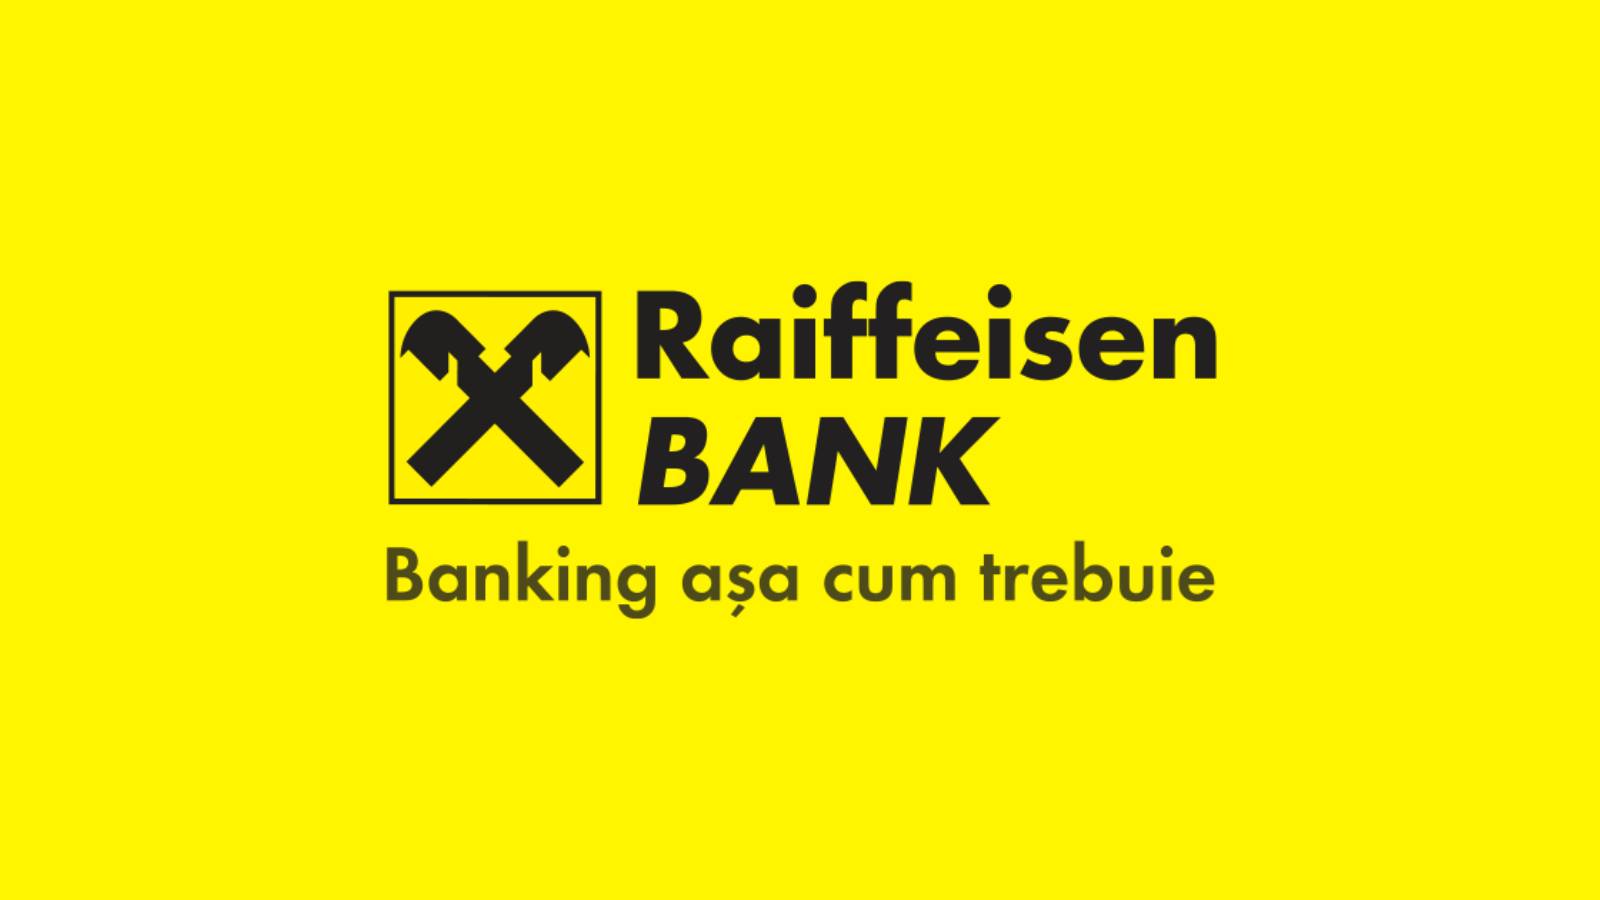 Raiffeisen Bank Decizia Oficiala GRATUIT faca Vara mai Frumoasa